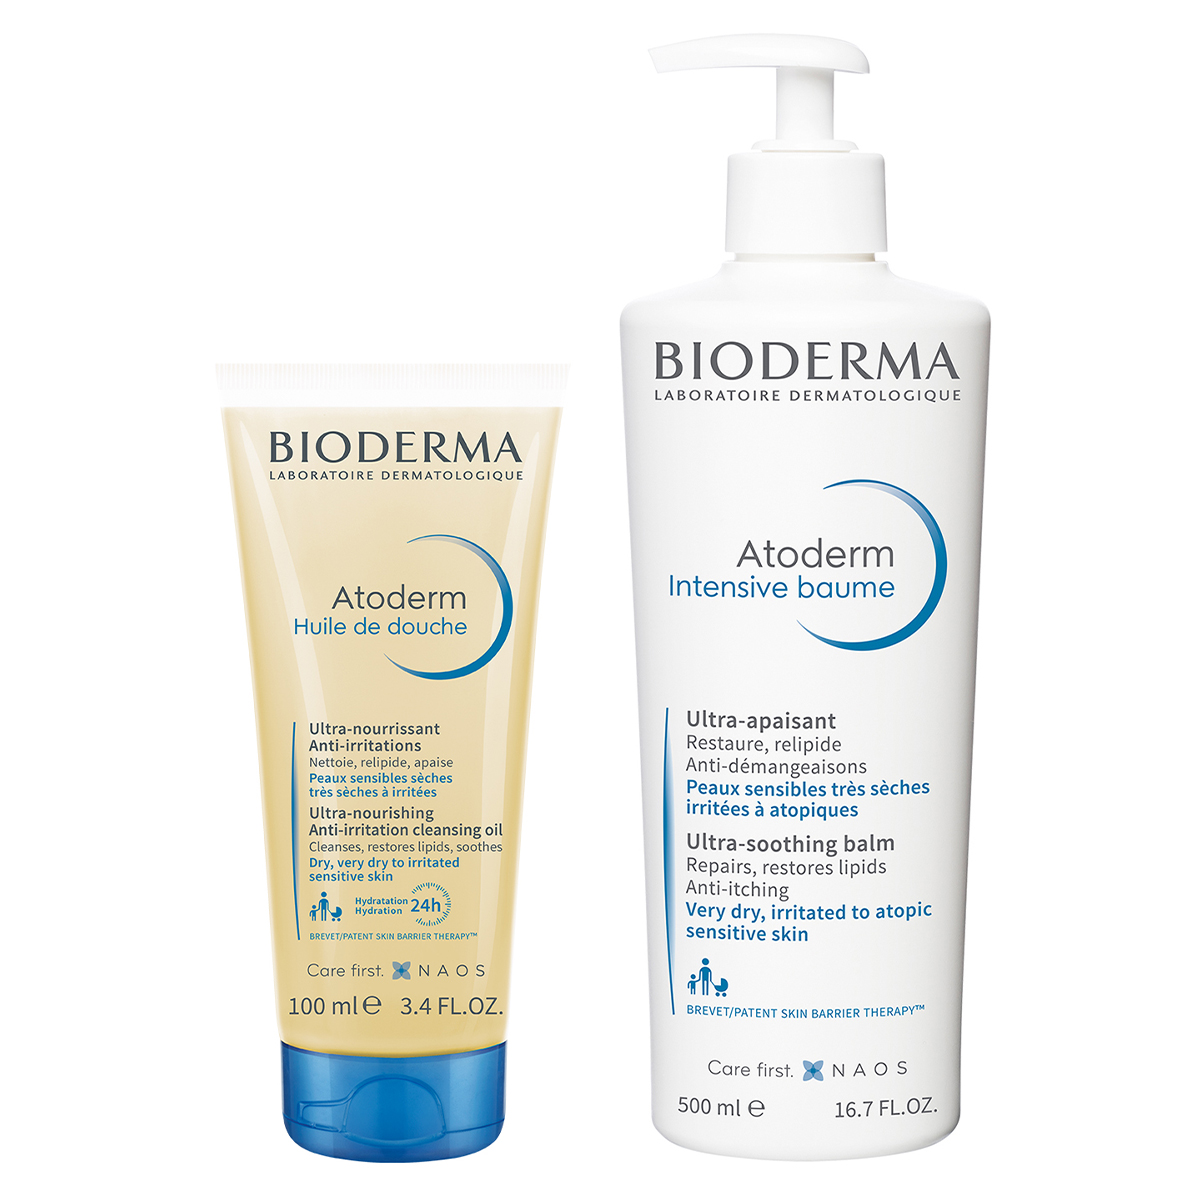 Bioderma Набор средств для сухой, чувствительной, атопичной кожи (Bioderma, Atoderm)